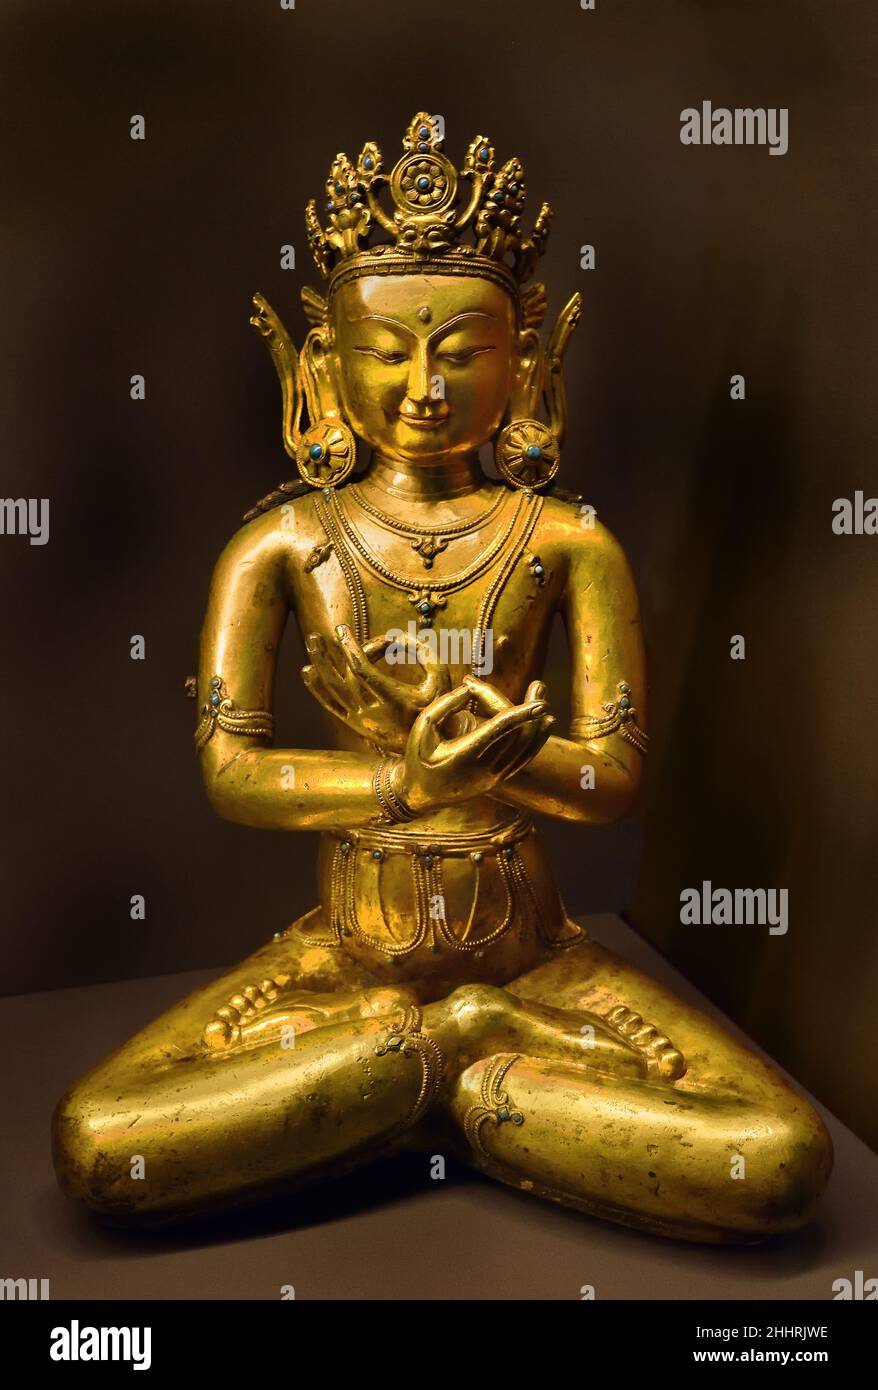 Vajradhara -Tibet 15th -16th secolo il Buddha Vajradhara è una manifestazione divina della totalità degli insegnamenti buddisti ed è accreditato di essere la fonte dei testi tantrici buddisti tibetani Foto Stock